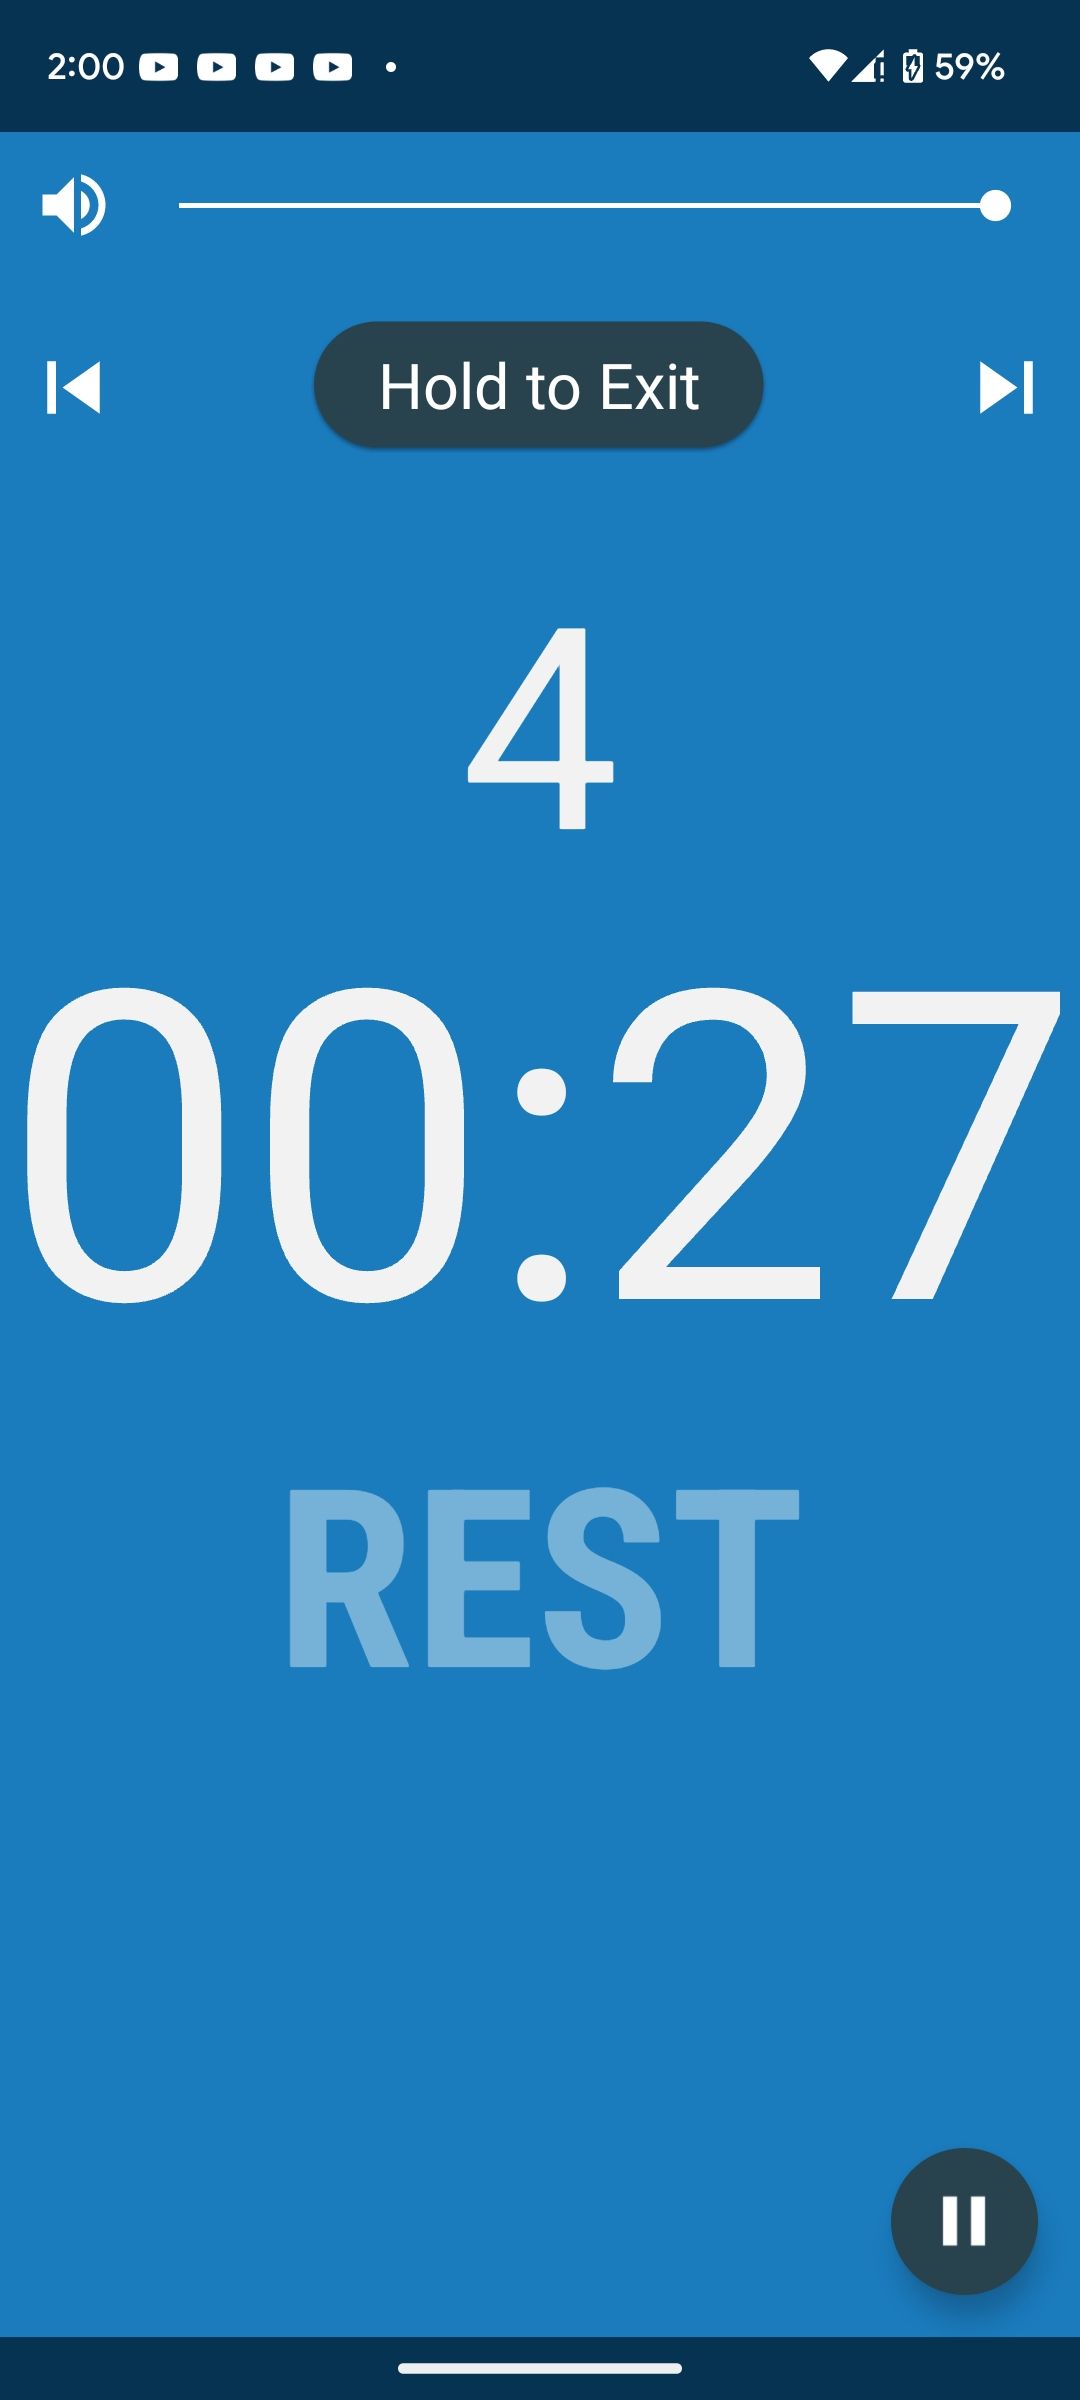 Interval Timer app timer UI